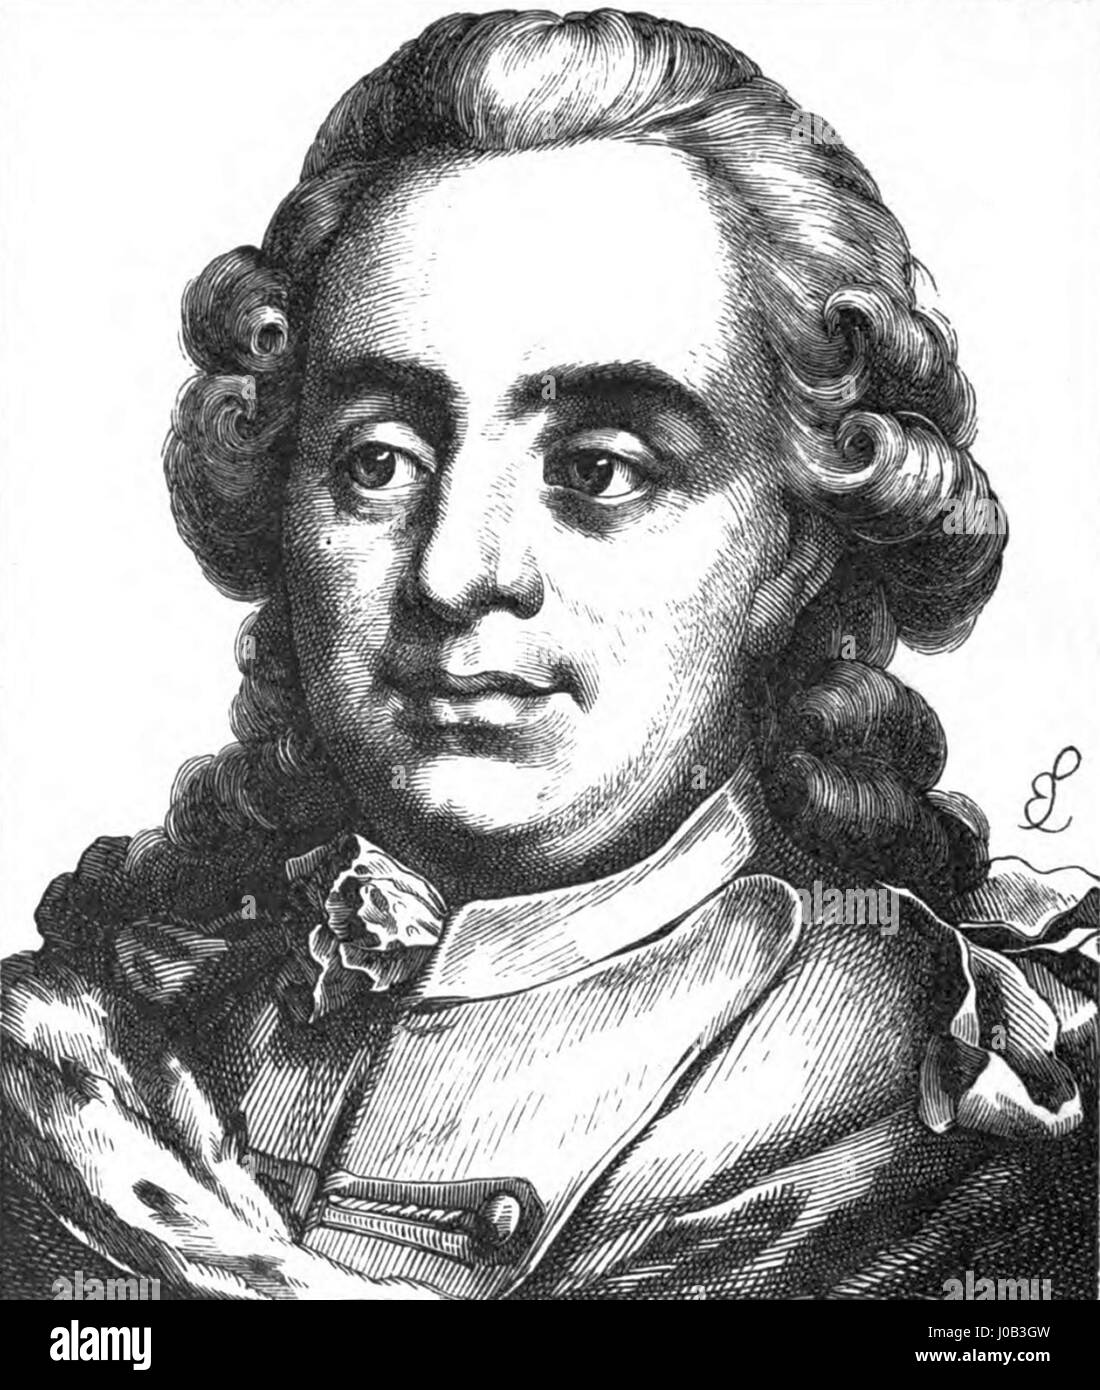 Ferdinand von Braunschweig-Wolfenbüttel Stock Photo - Alamy